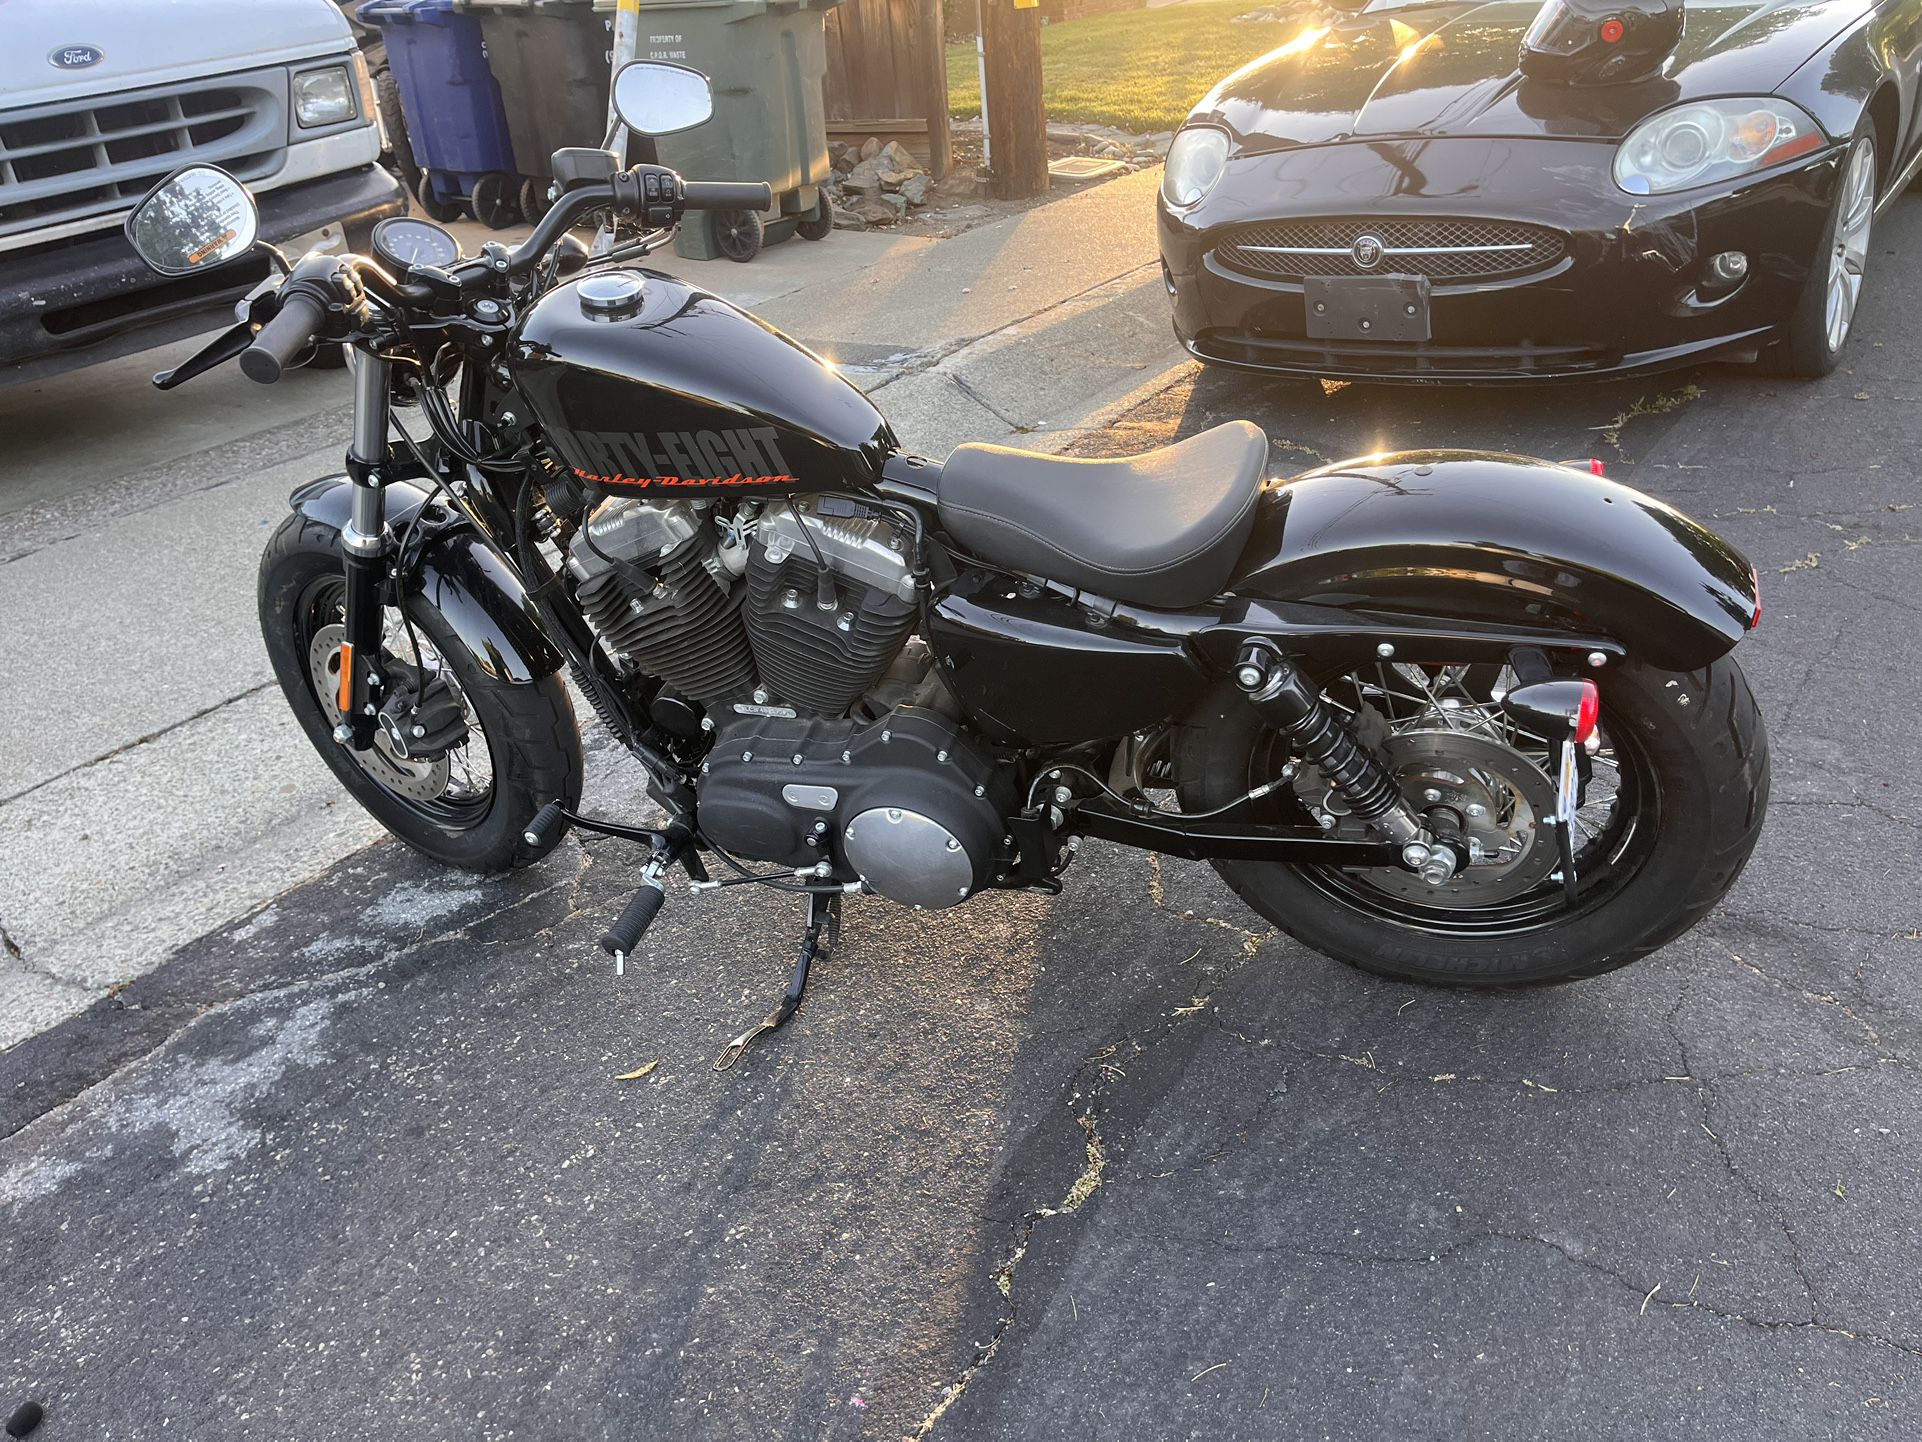 2015 Harley Davidson Spostster 1200cc